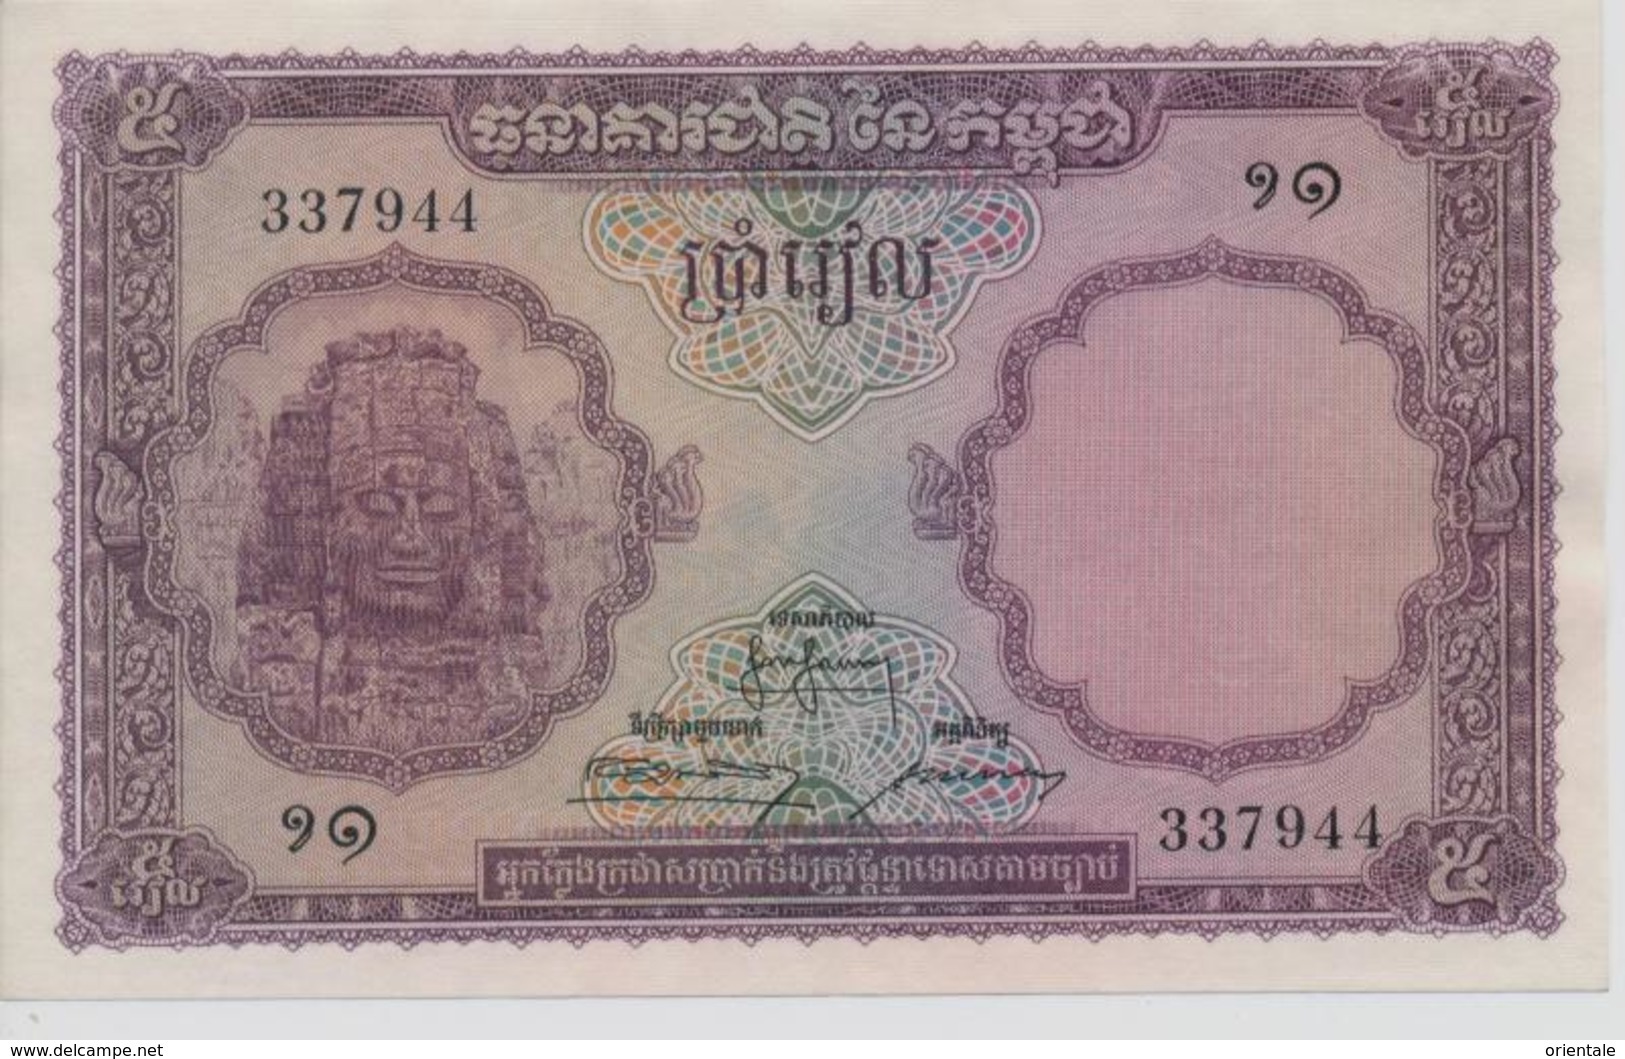 CAMBODIA  P. 2a 5 R 1955  AUNC - Cambodia